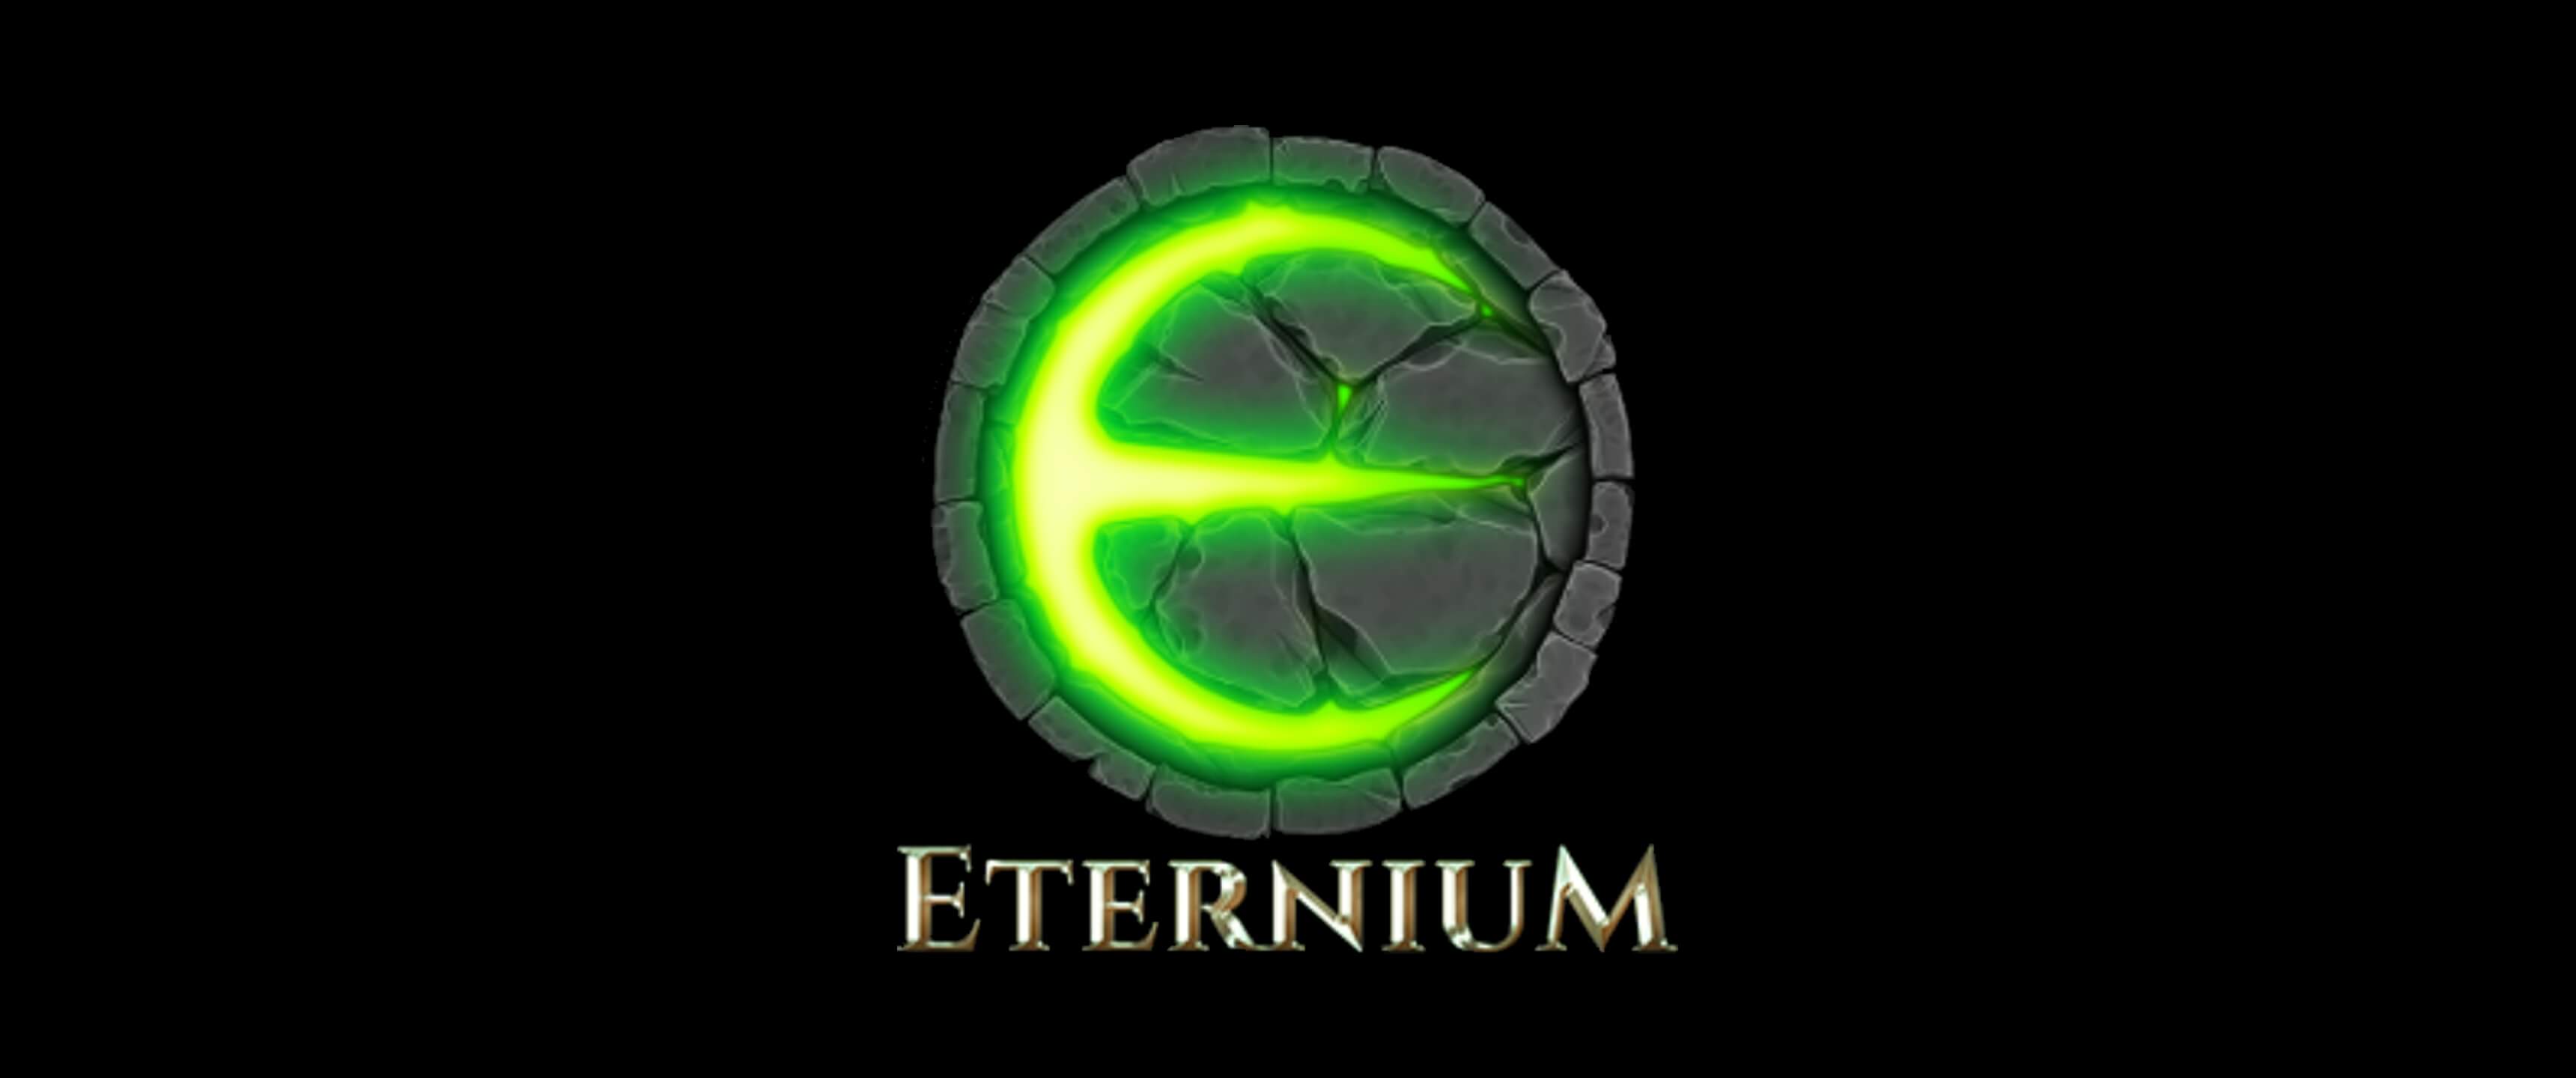 eternium level max 32001192 game guardian